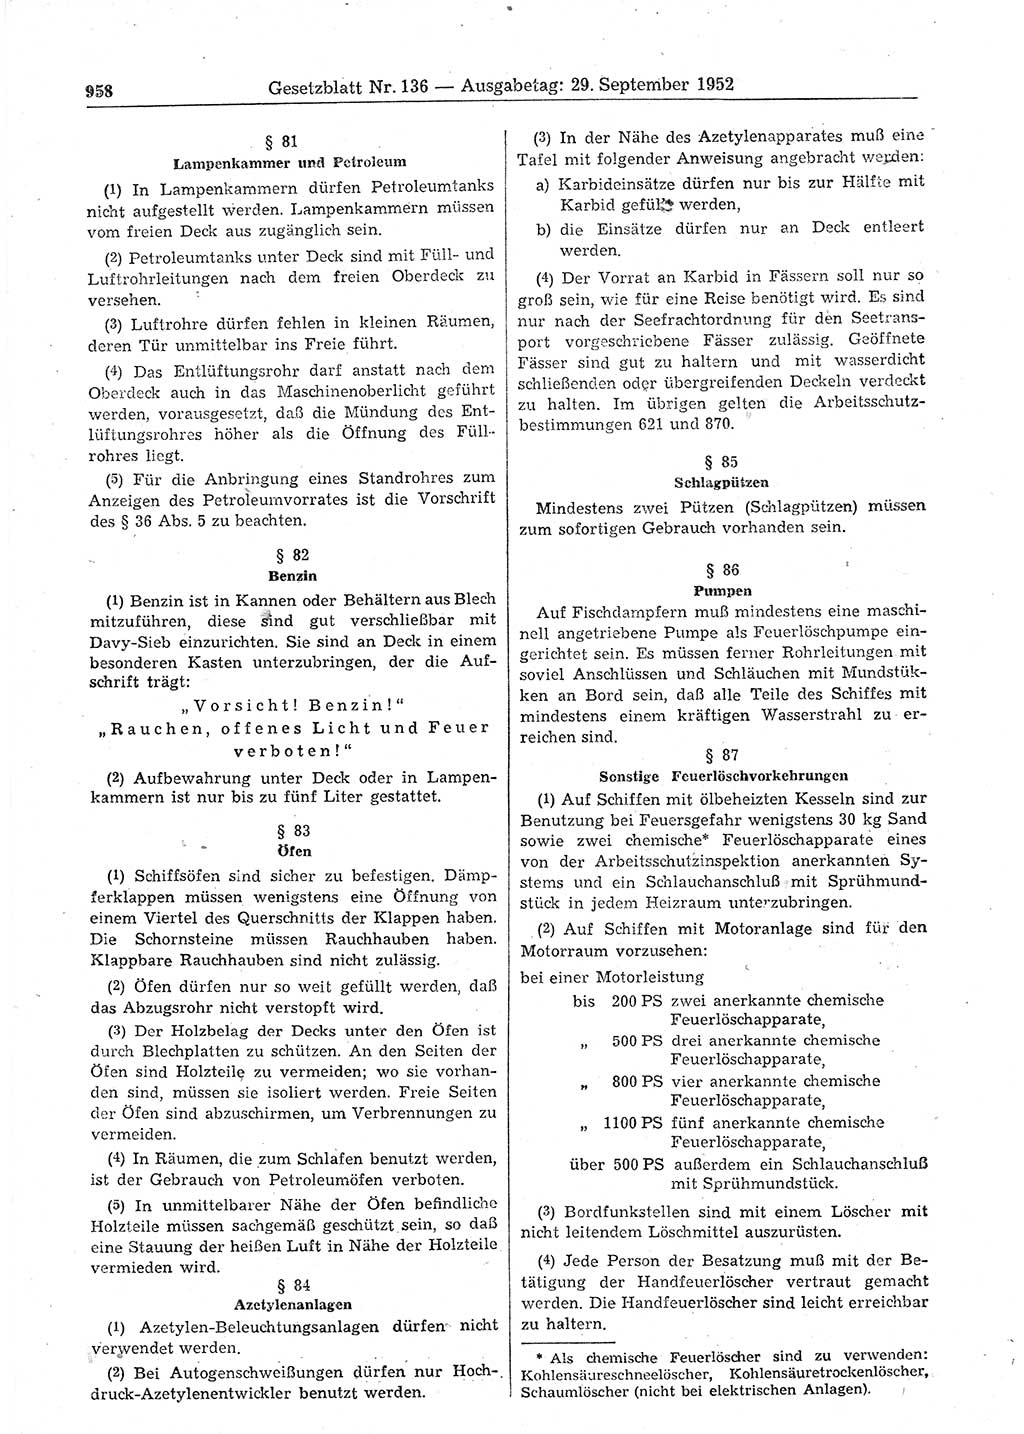 Gesetzblatt (GBl.) der Deutschen Demokratischen Republik (DDR) 1952, Seite 958 (GBl. DDR 1952, S. 958)